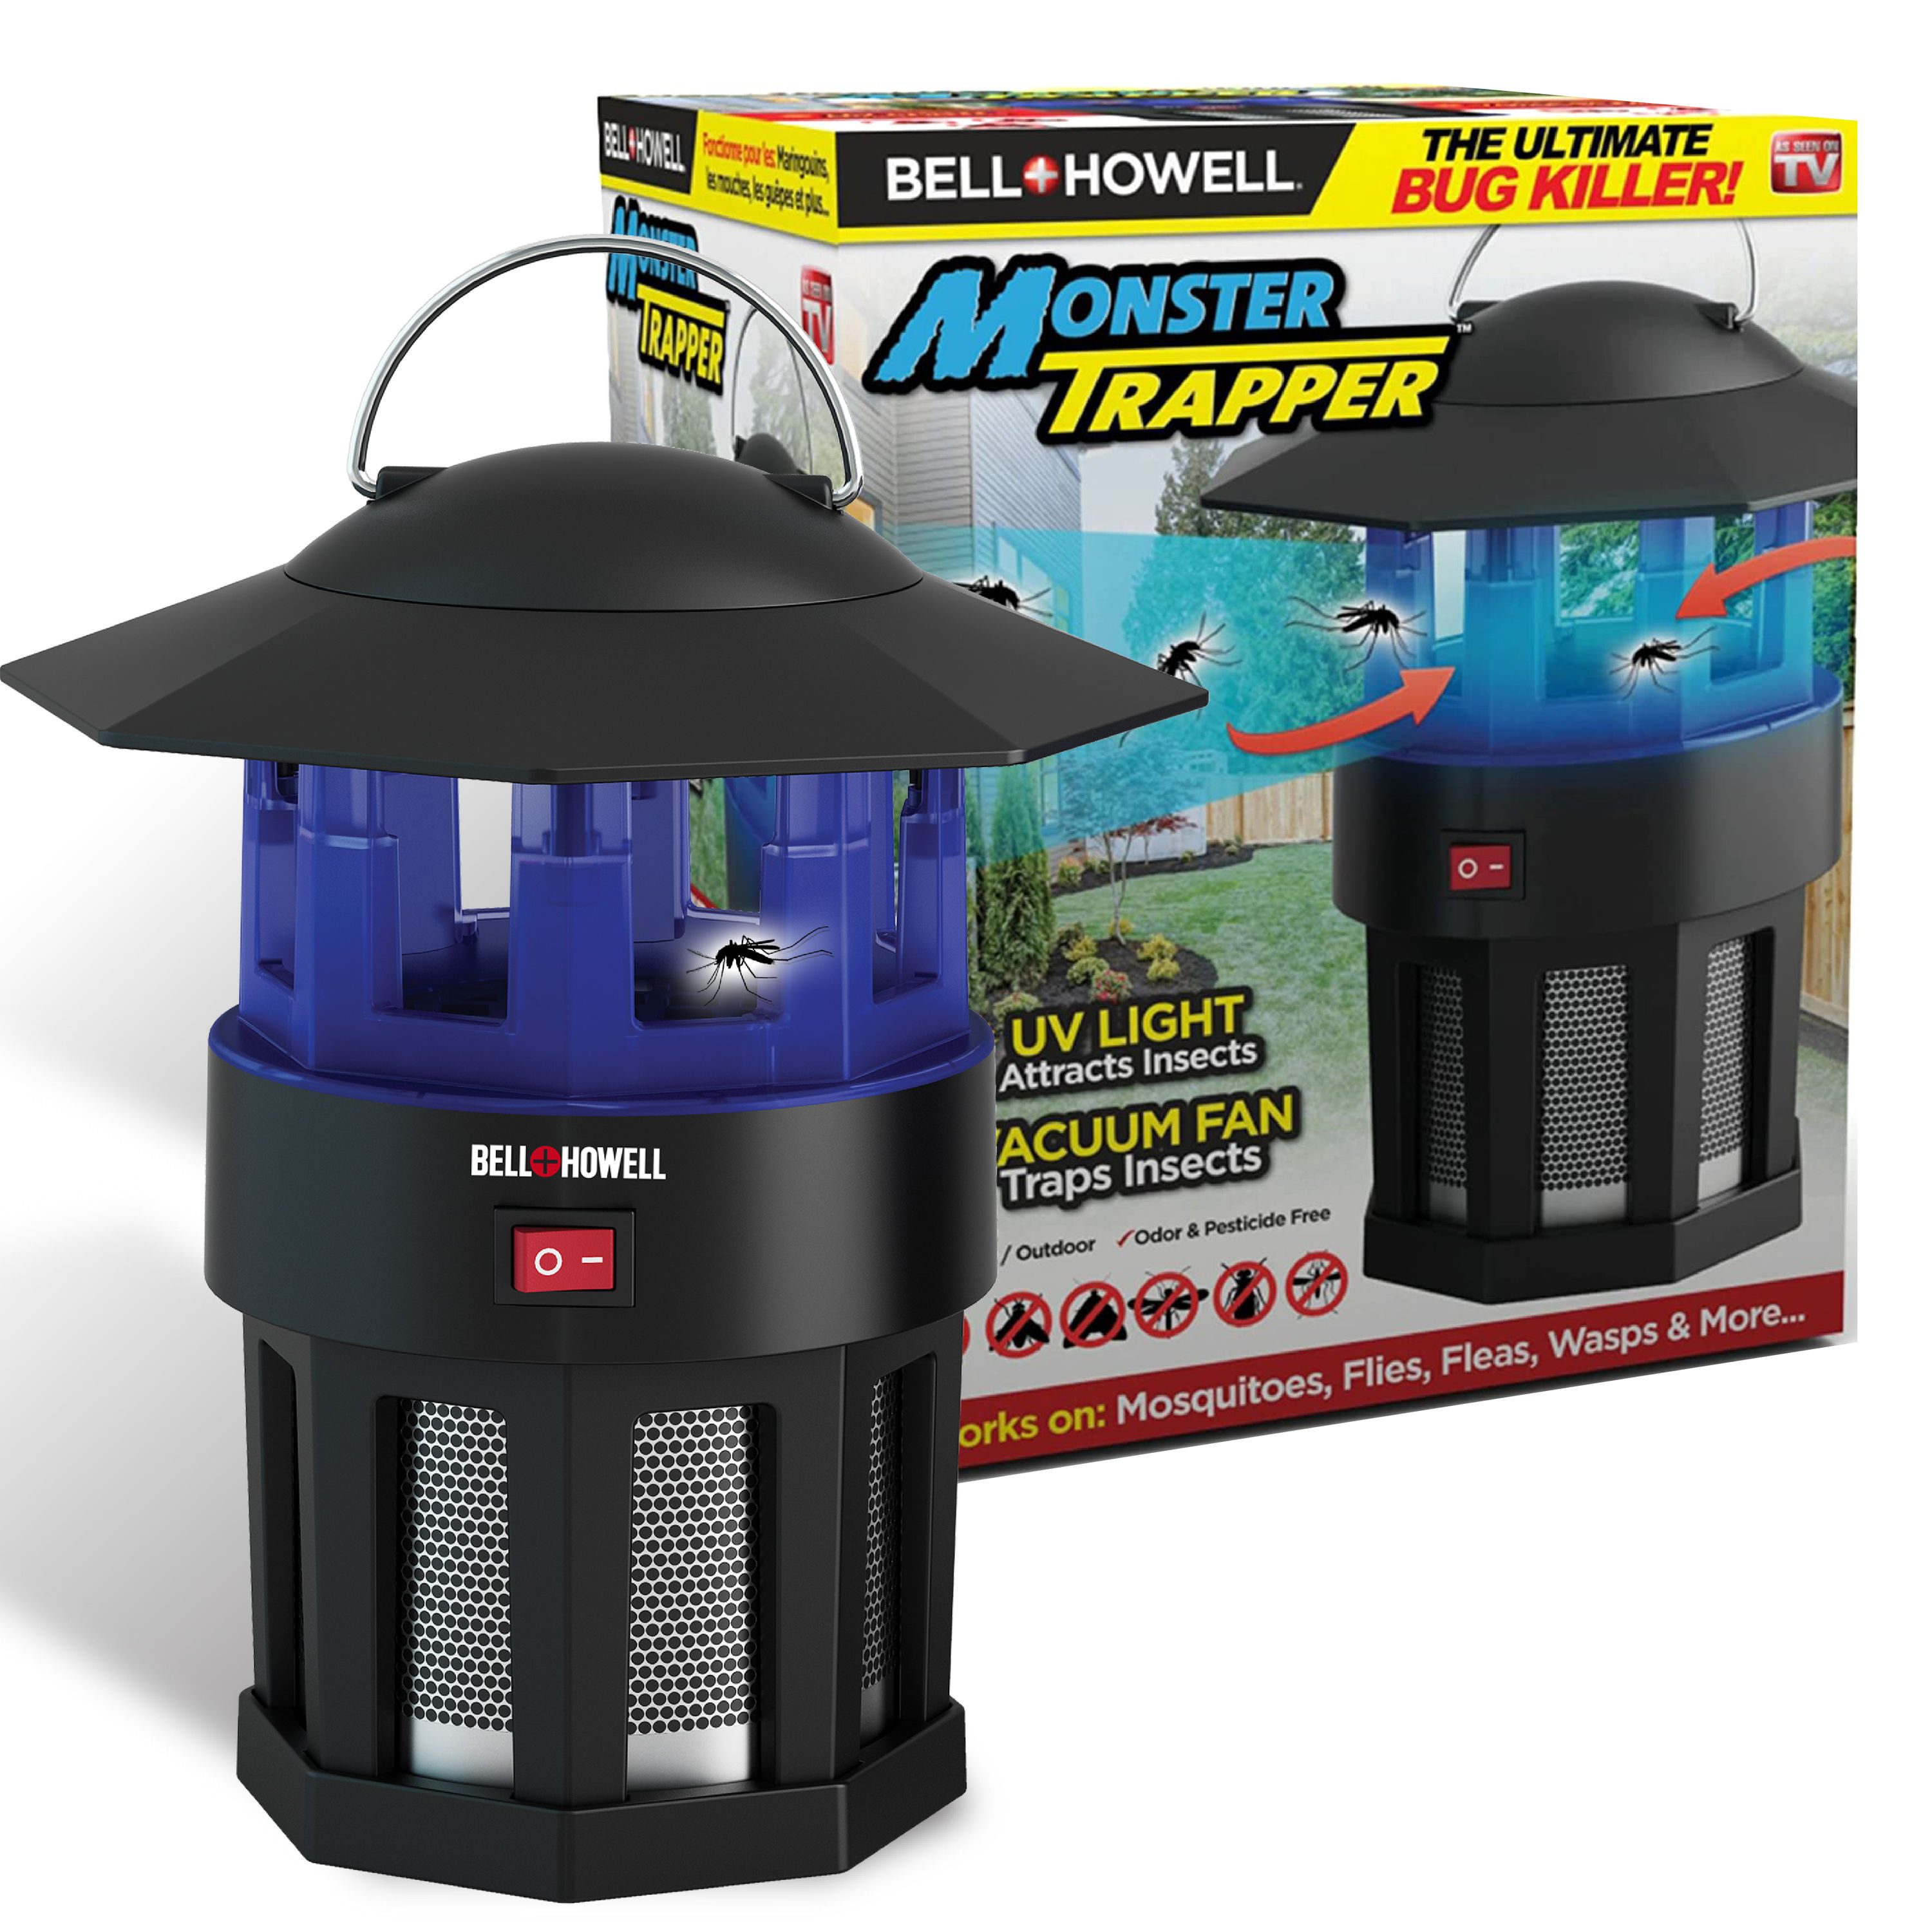 Bell + Howell Monster Trapper